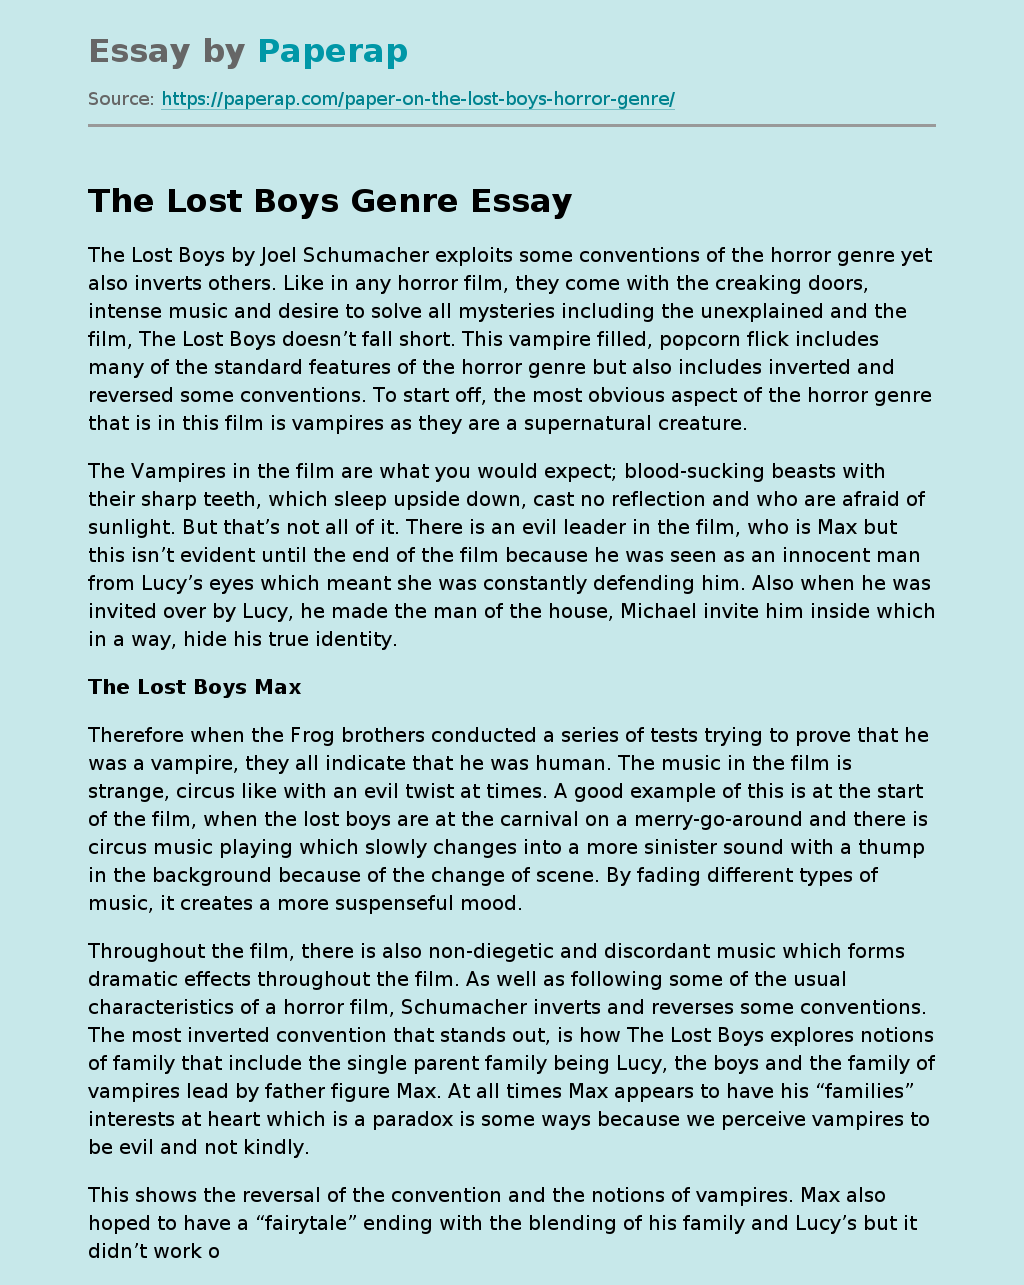 The Lost Boys Genre